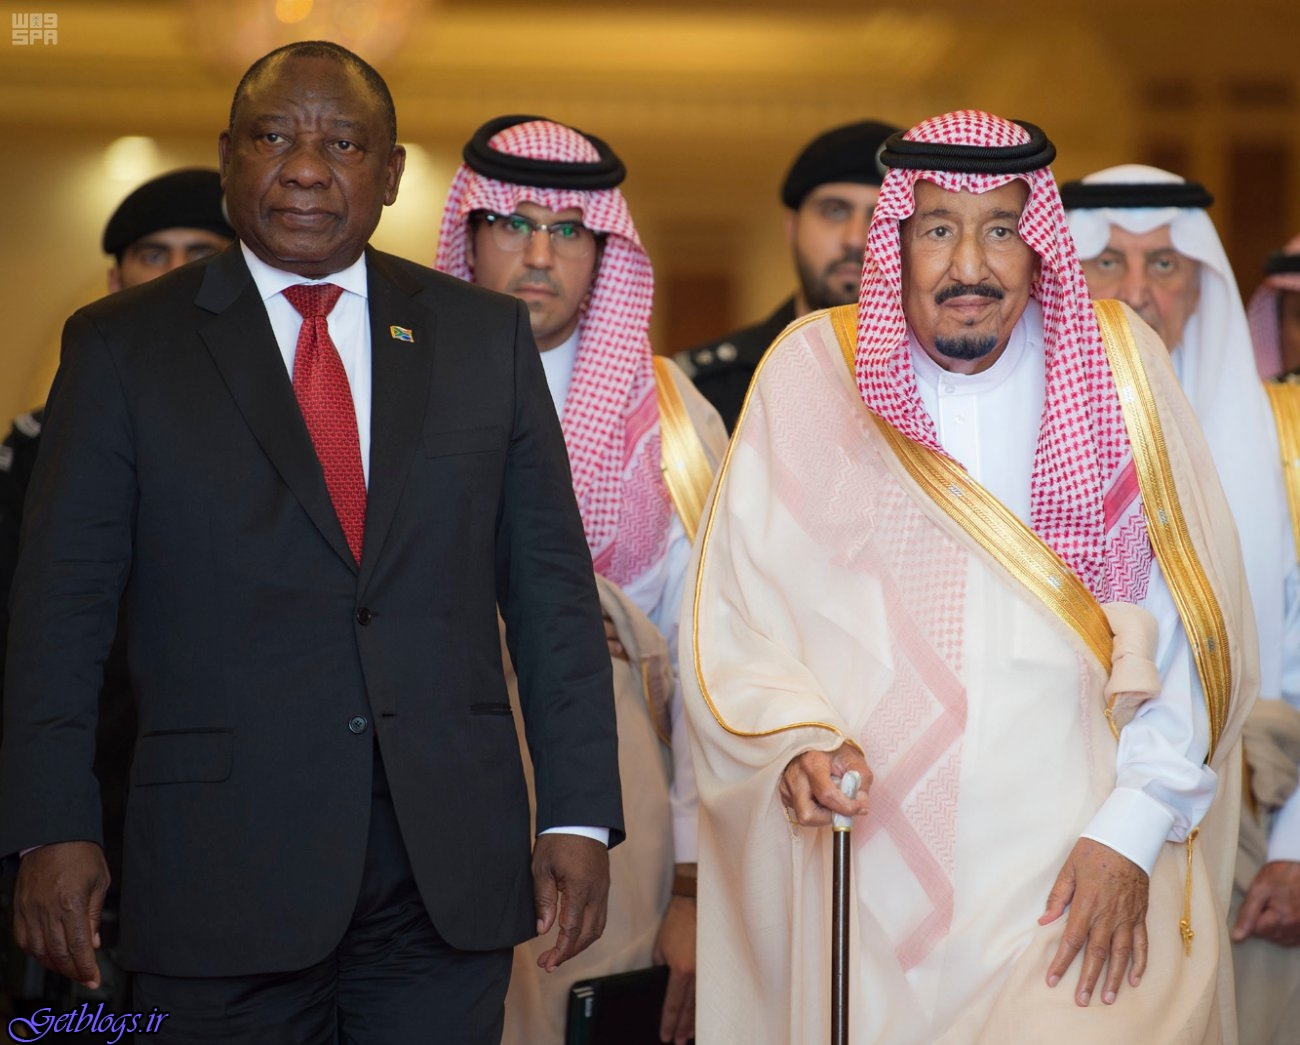 سرمایه گذاری سنگین عربستان جهت مقابله با کشور عزیزمان ایران در آفریقای جنوبی